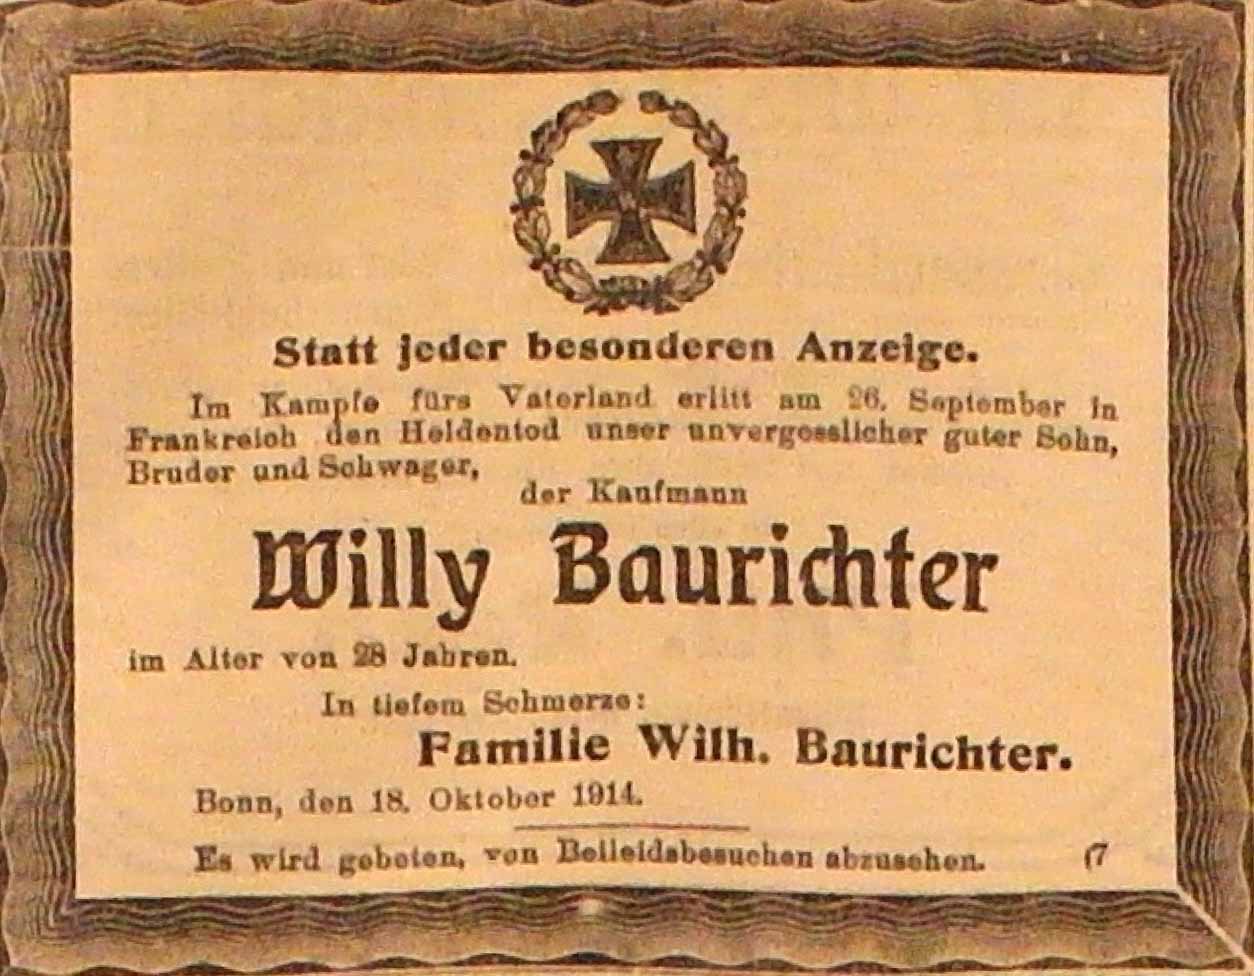 Anzeige im General-Anzeiger vom 18. Oktober 1914